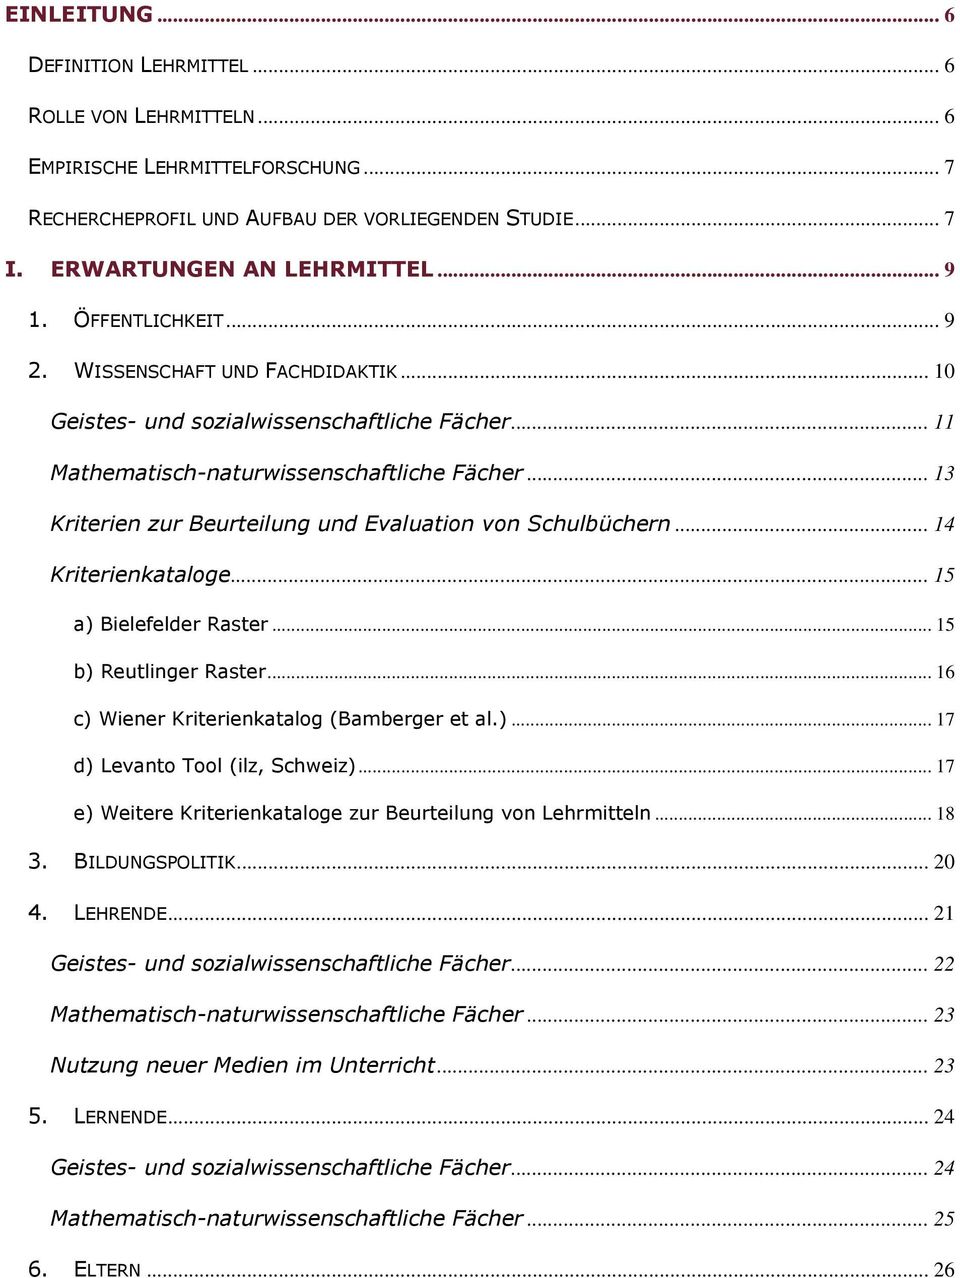 .. 13 Kriterien zur Beurteilung und Evaluation von Schulbüchern... 14 Kriterienkataloge... 15 a) Bielefelder Raster... 15 b) Reutlinger Raster... 16 c) Wiener Kriterienkatalog (Bamberger et al.)... 17 d) Levanto Tool (ilz, Schweiz).